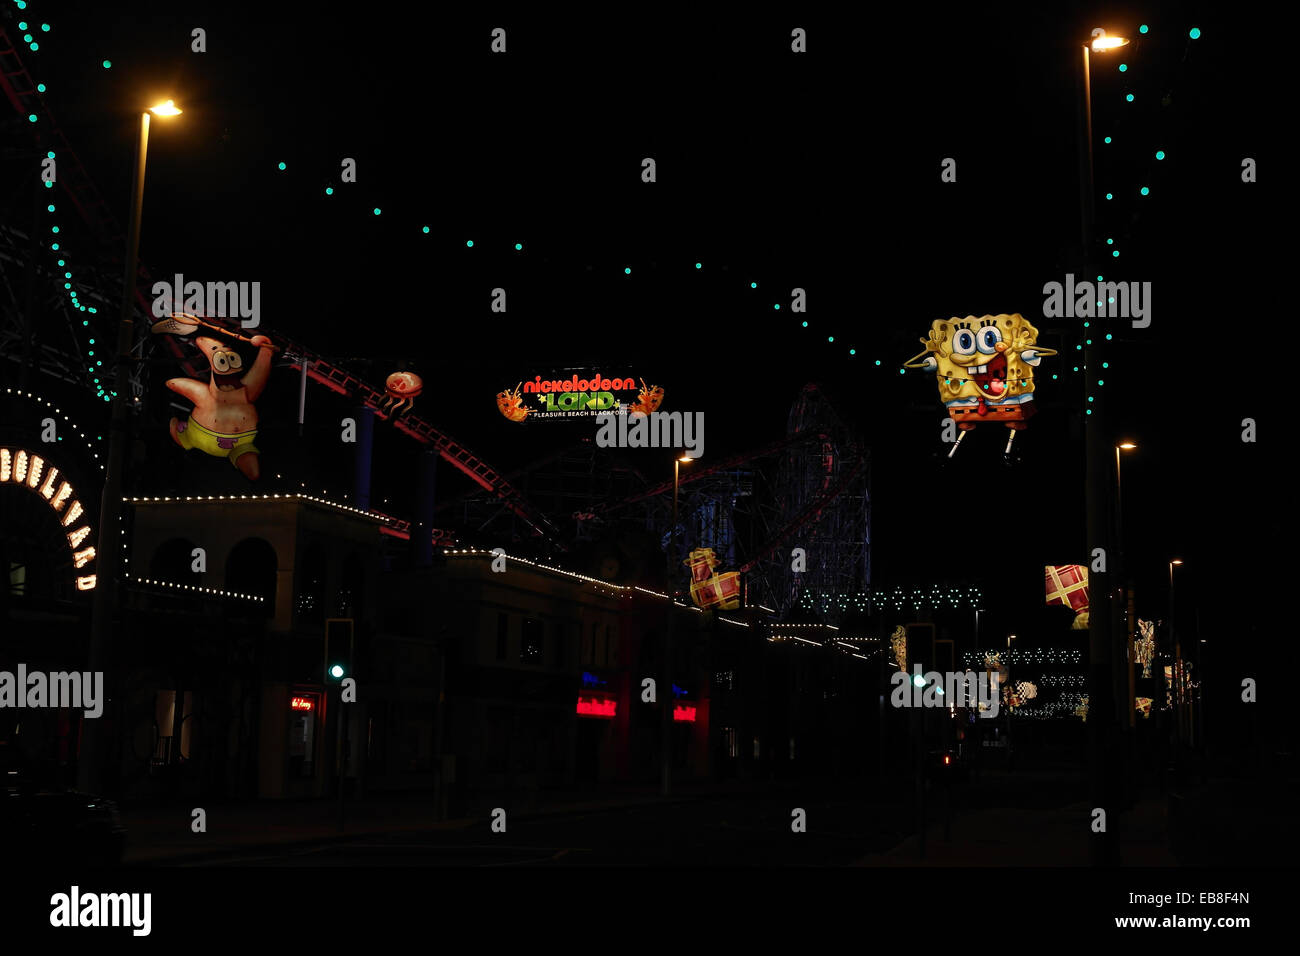 Vista notturna, guardando a sud di concertina Critters, SpongeBob e Patrick Star immagini, Nickelodeon luminarie, Blackpool, Regno Unito Foto Stock